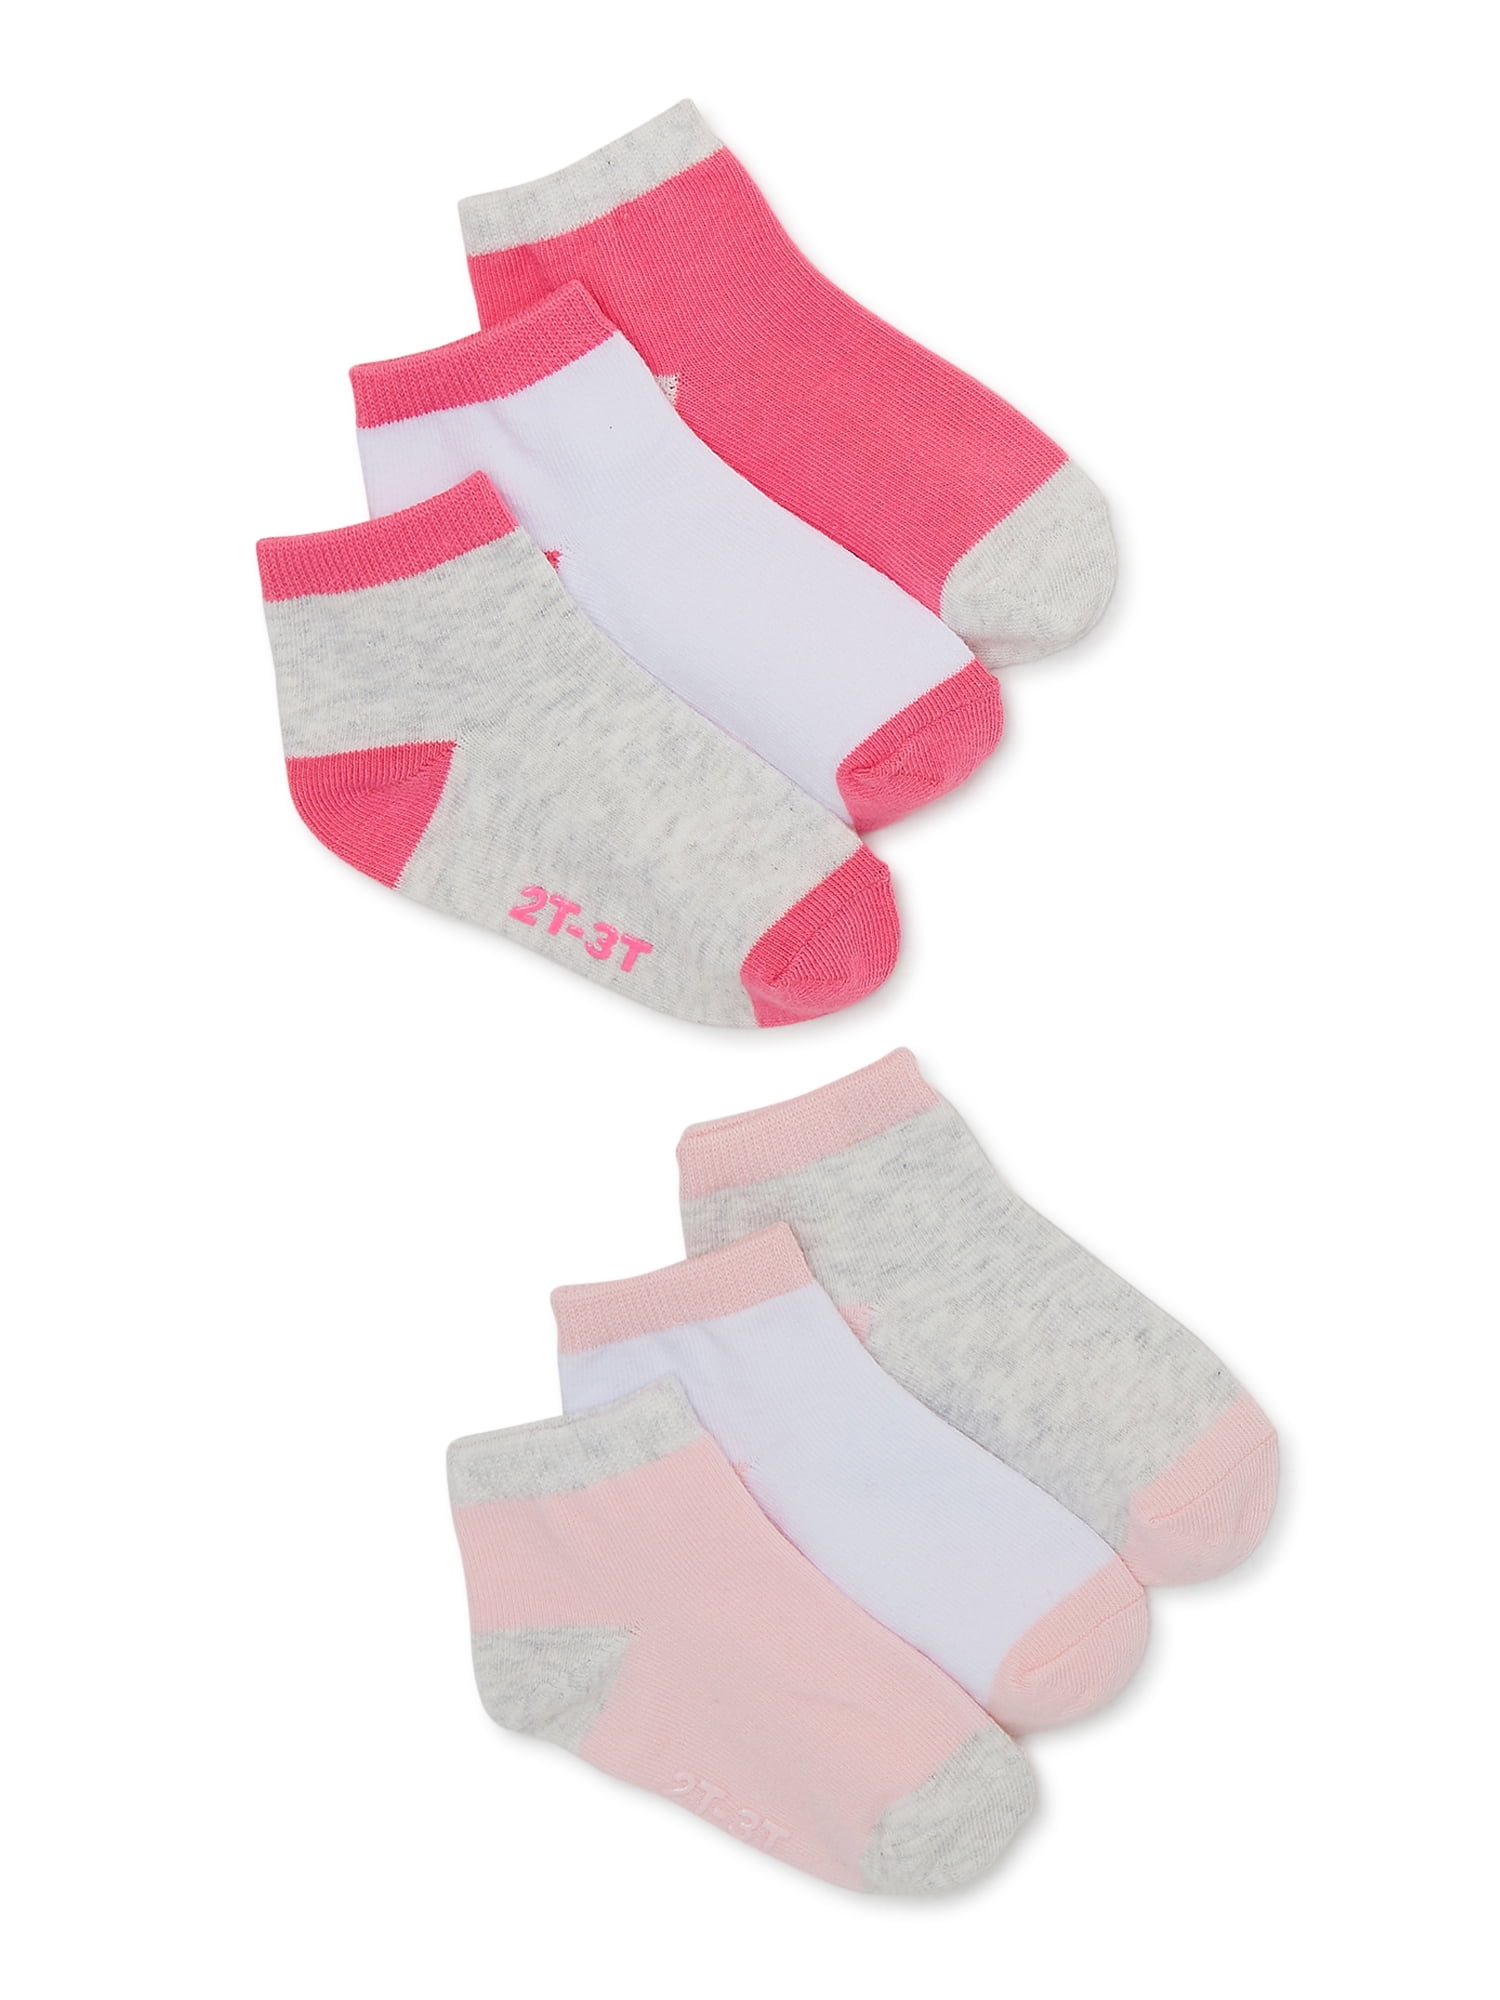 Carter's Child of Mine Toddler Girl Ankle Socks, 6-Pack, Sizes 12M-5T ...